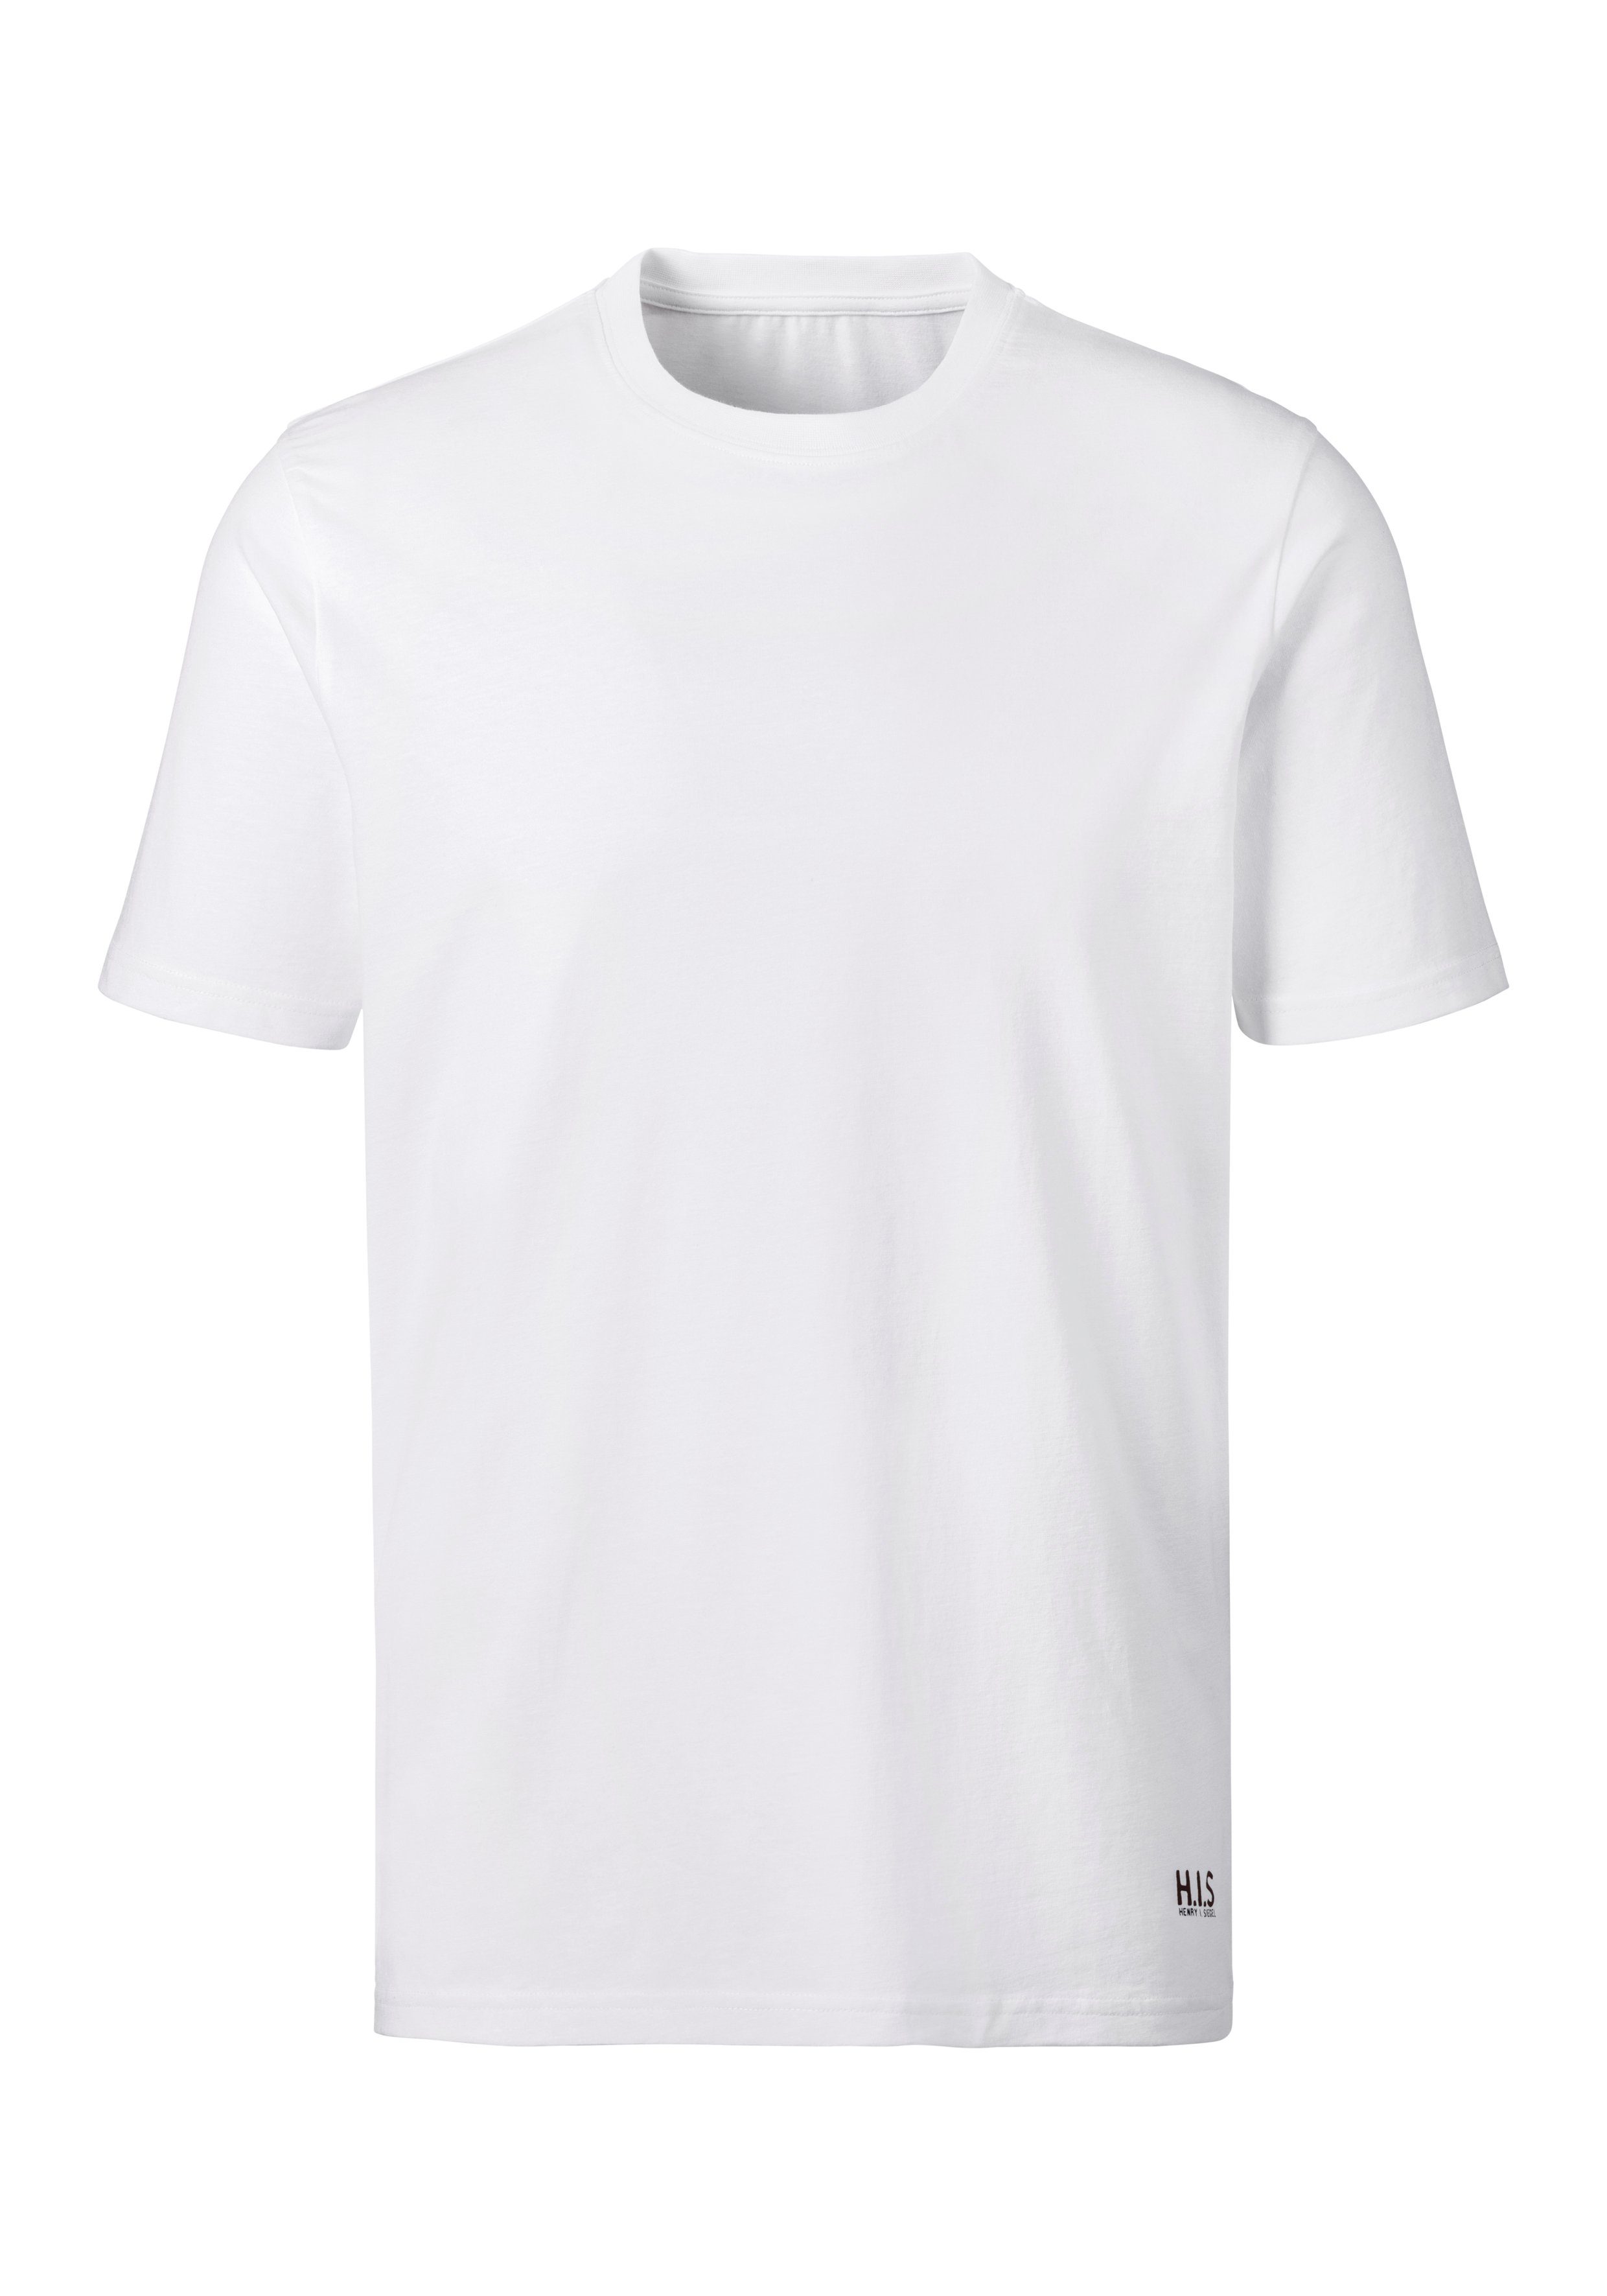 H.I.S Kurzarmshirt als (3er-Pack) perfekt weiß Unterziehshirt